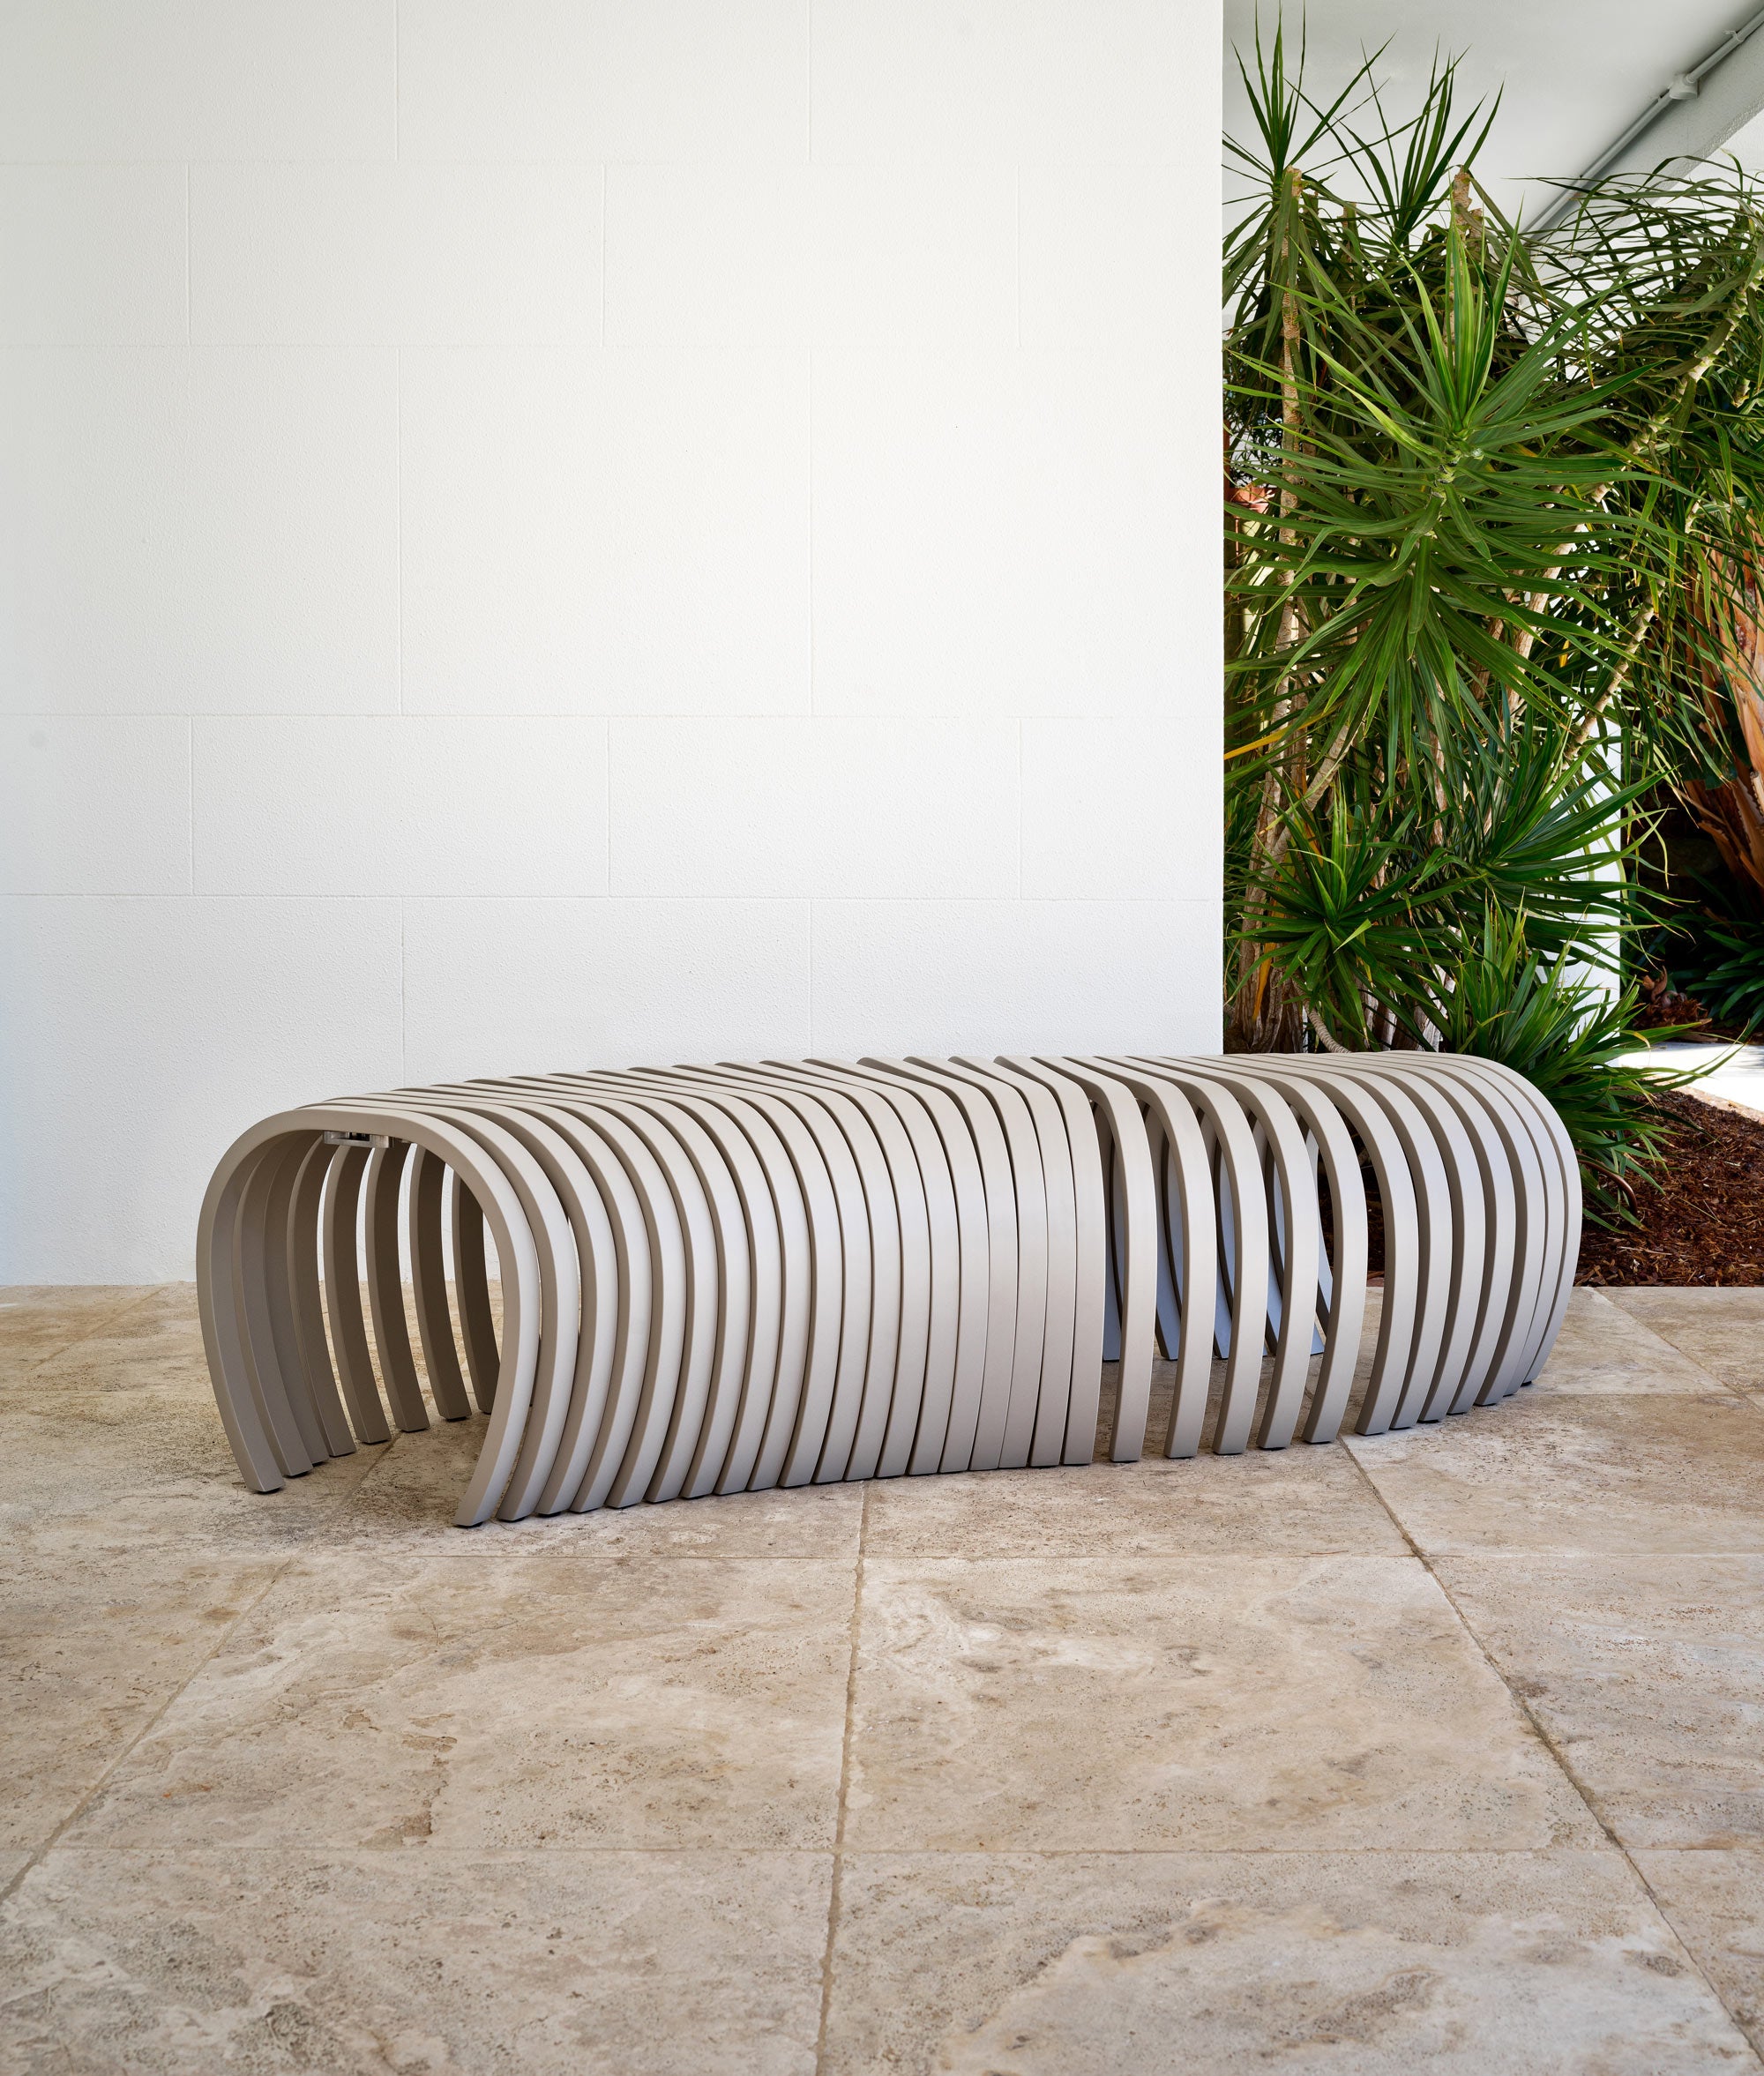 Ribs Bench Outdoor | Aluminium Metal Outdoor Seating Furniture | Stefan Lie | DesignByThem